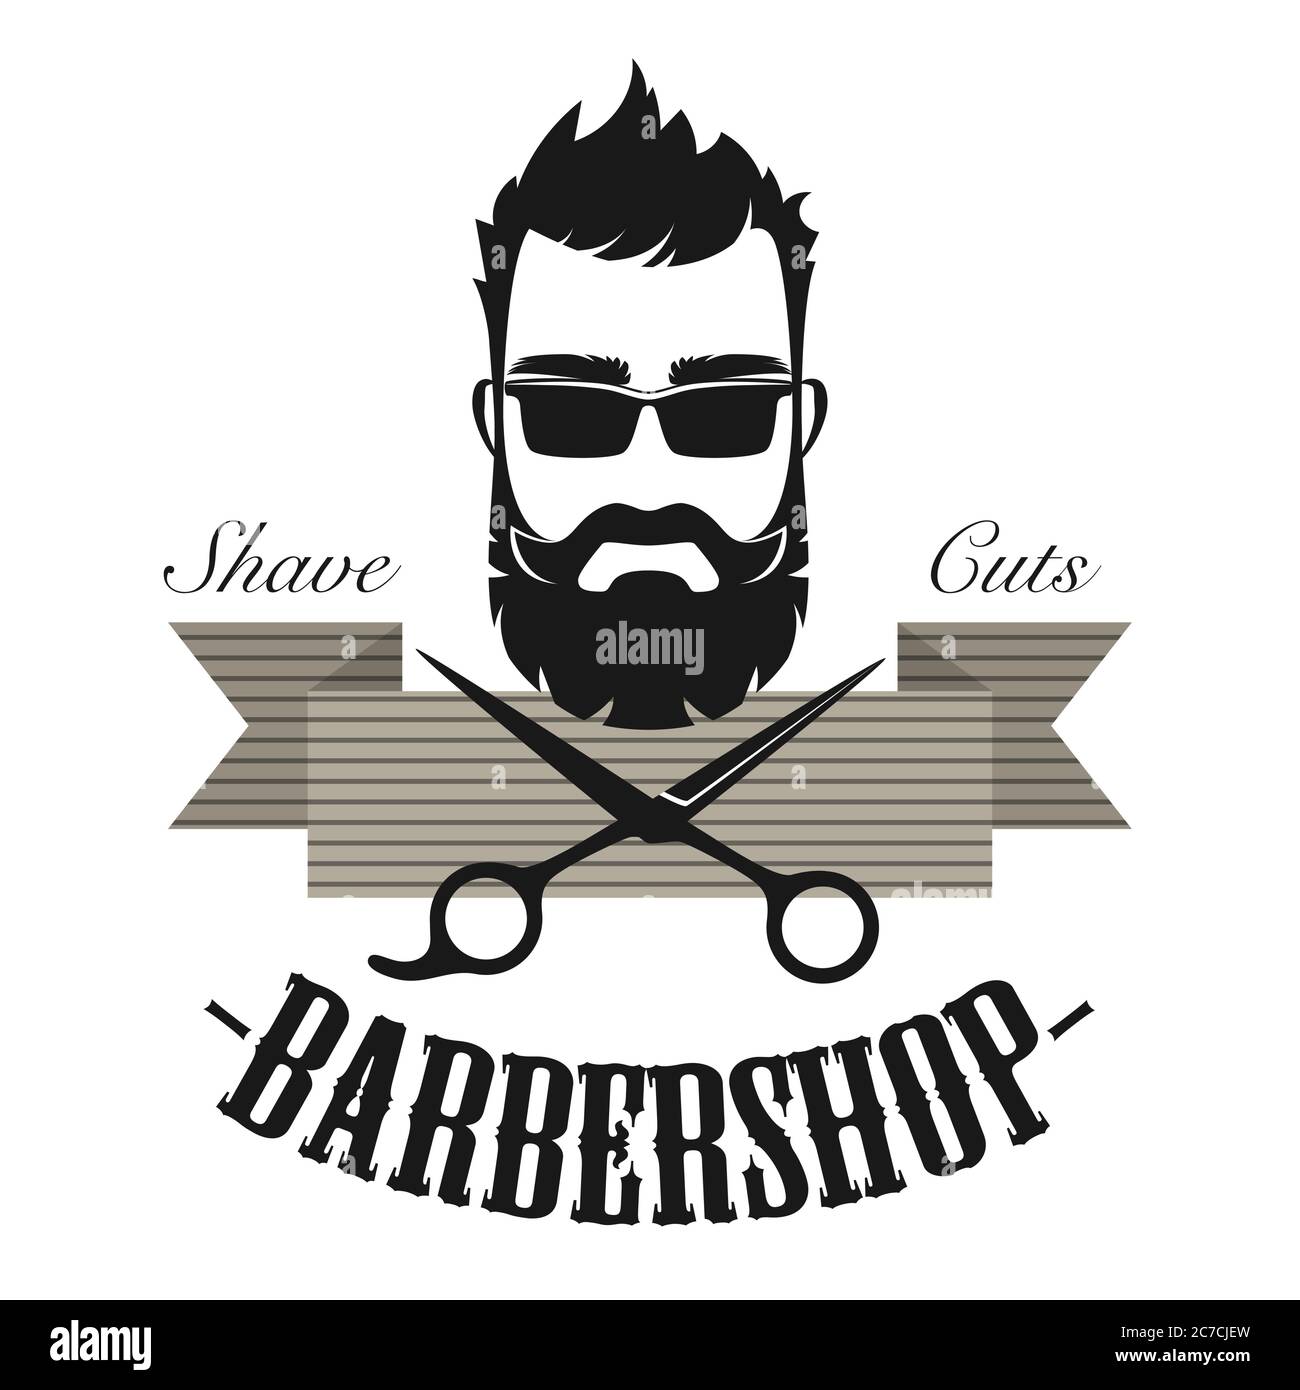 Barber shop vintage logo design Royalty Free Vector Image